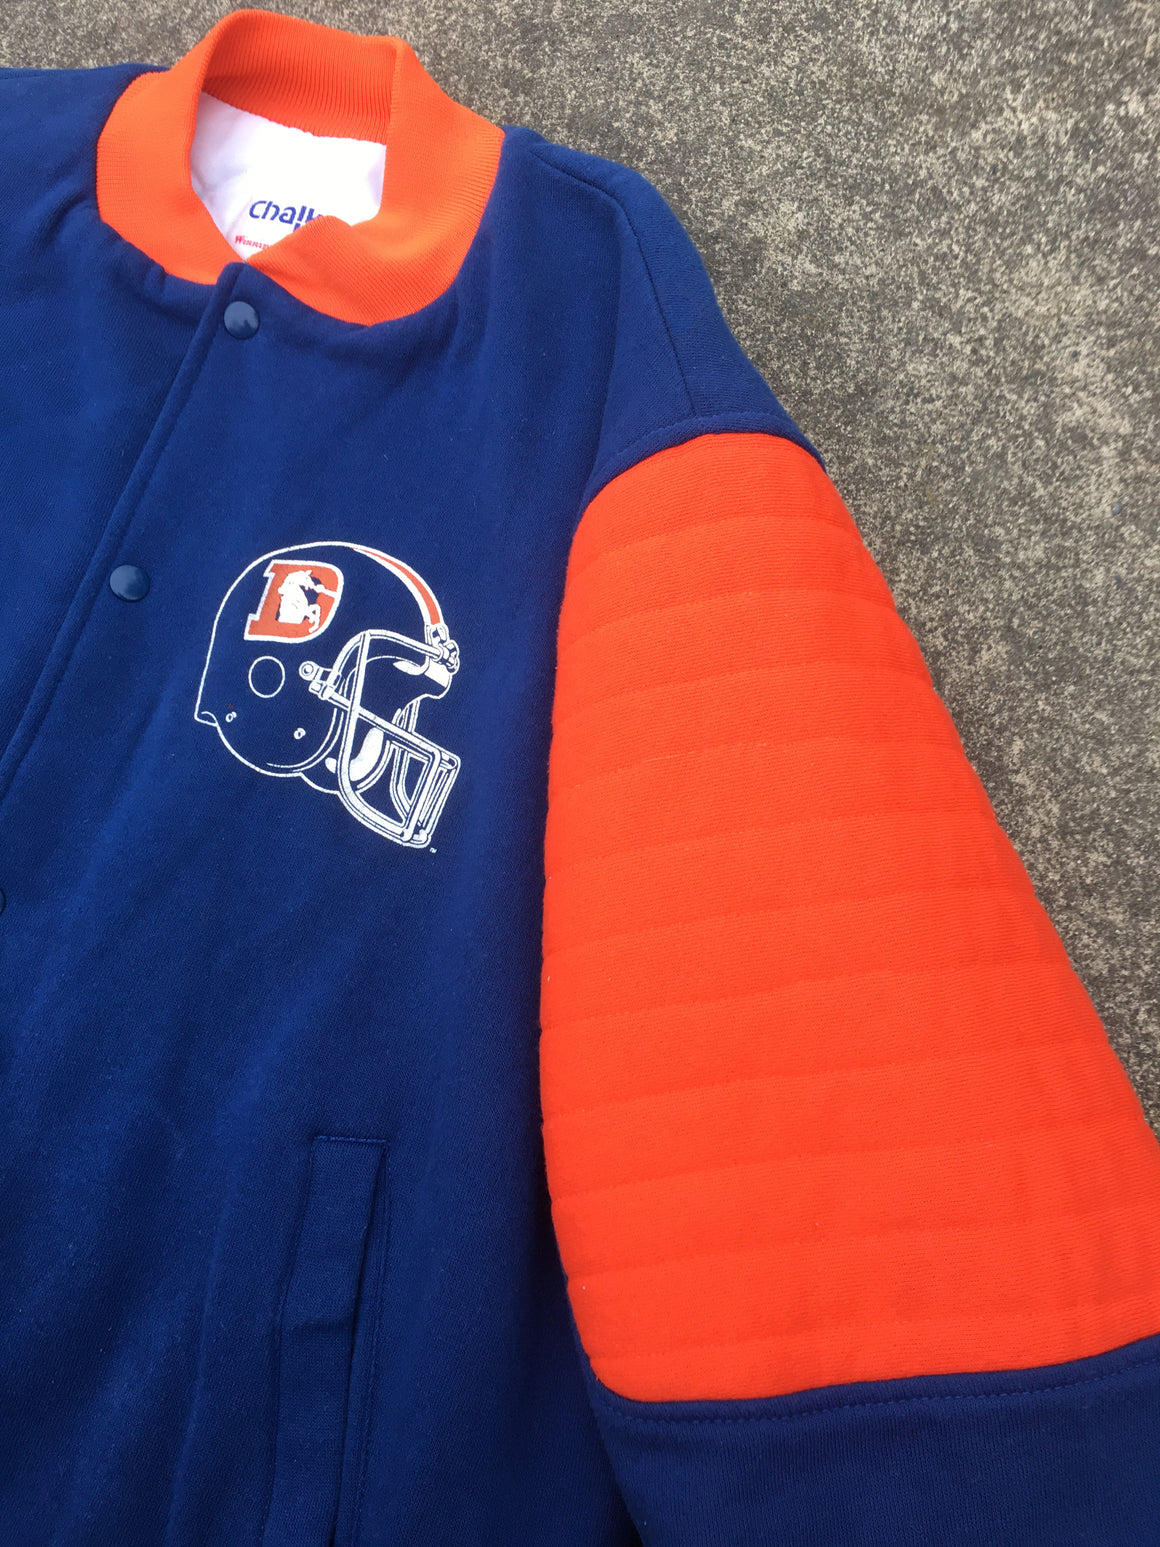 Vintage Denver Broncos jacket - XL